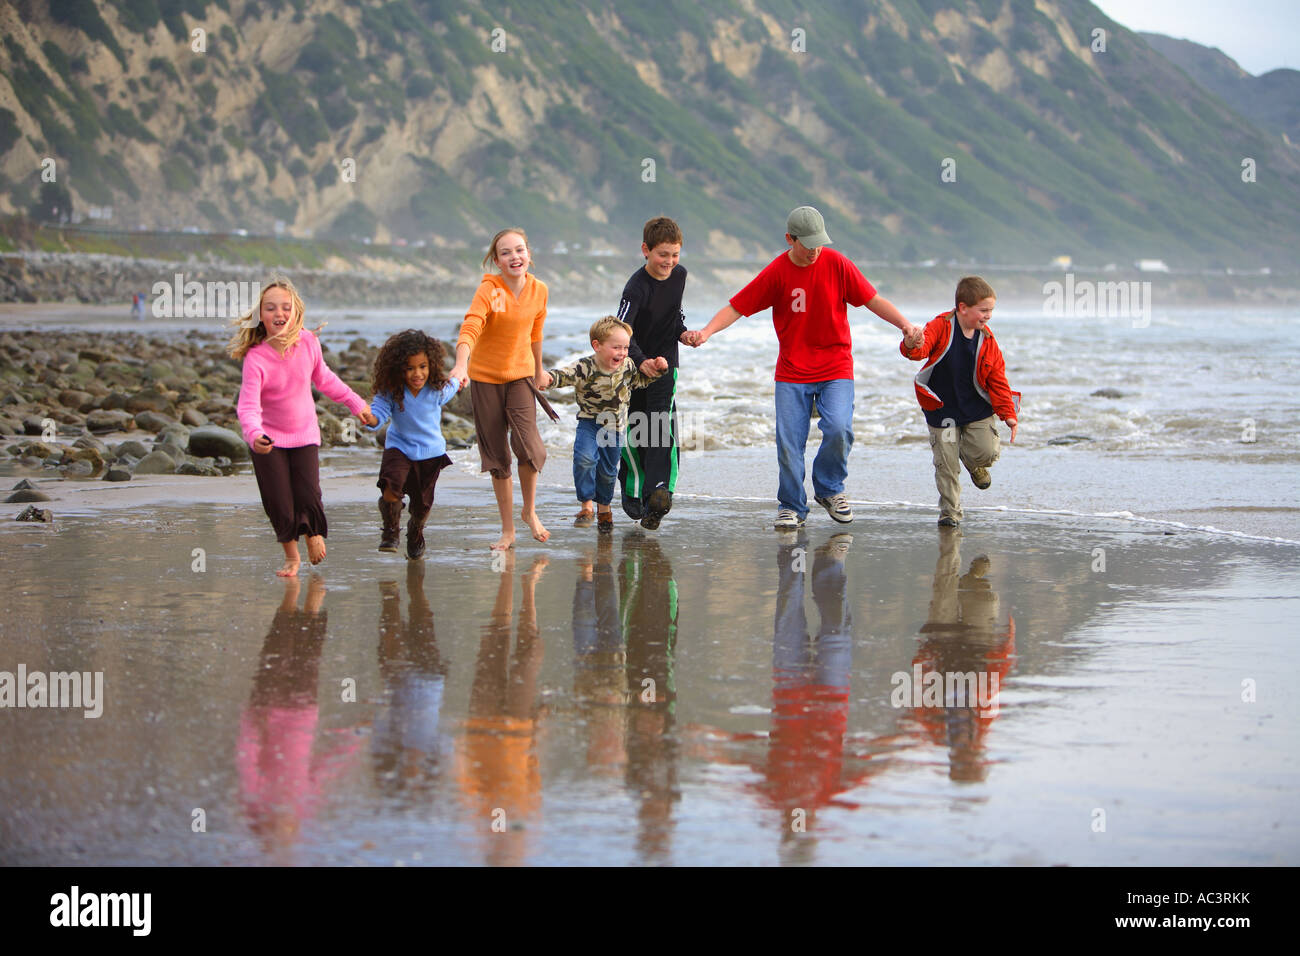 Les enfants courent sur les bancs de moules de plage Carpenteria Comté de Santa Barbara California United States Banque D'Images